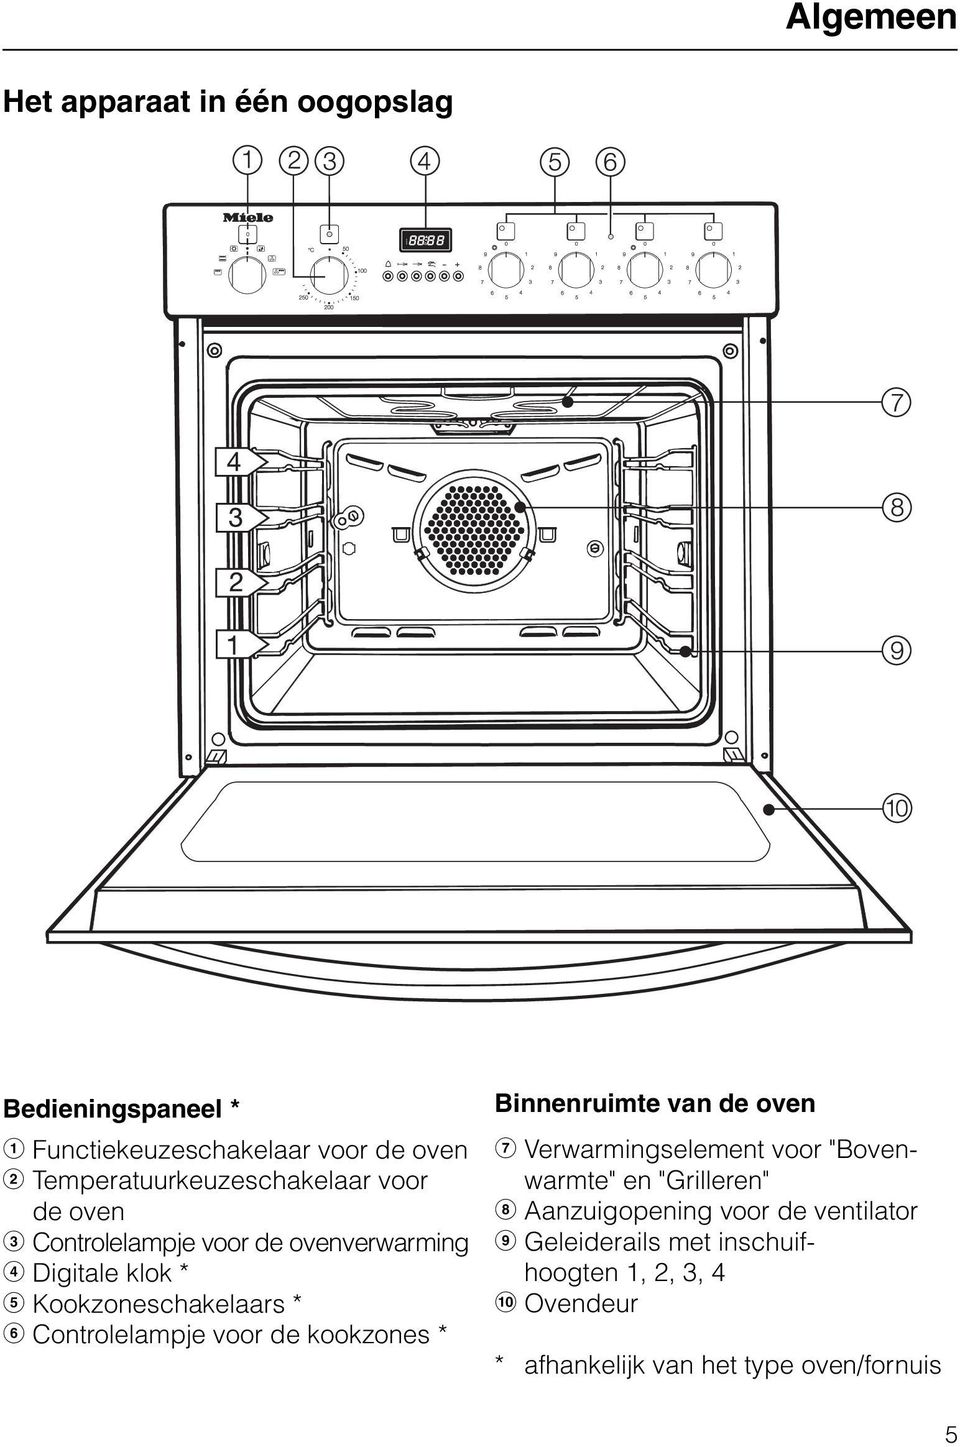 * g Controlelampje voor de kookzones * Binnenruimte van de oven h Verwarmingselement voor "Bovenwarmte" en "Grilleren"